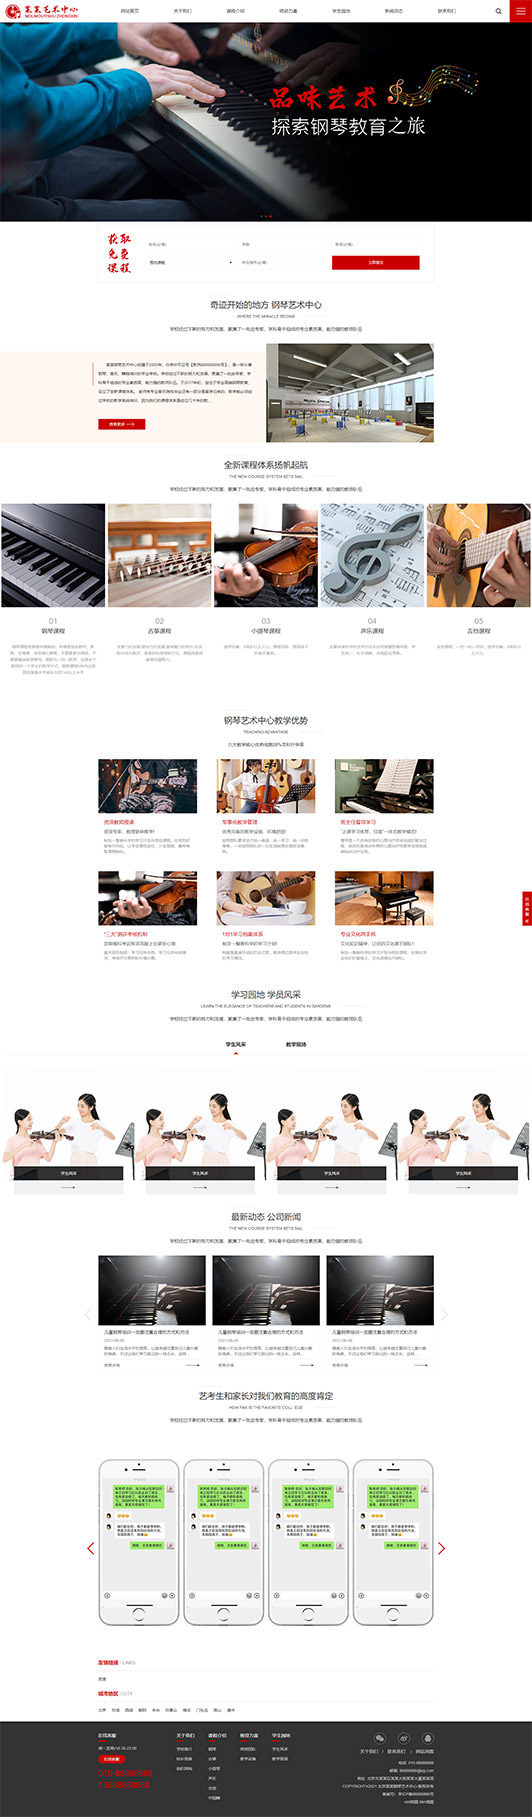 潍坊钢琴艺术培训公司响应式企业网站